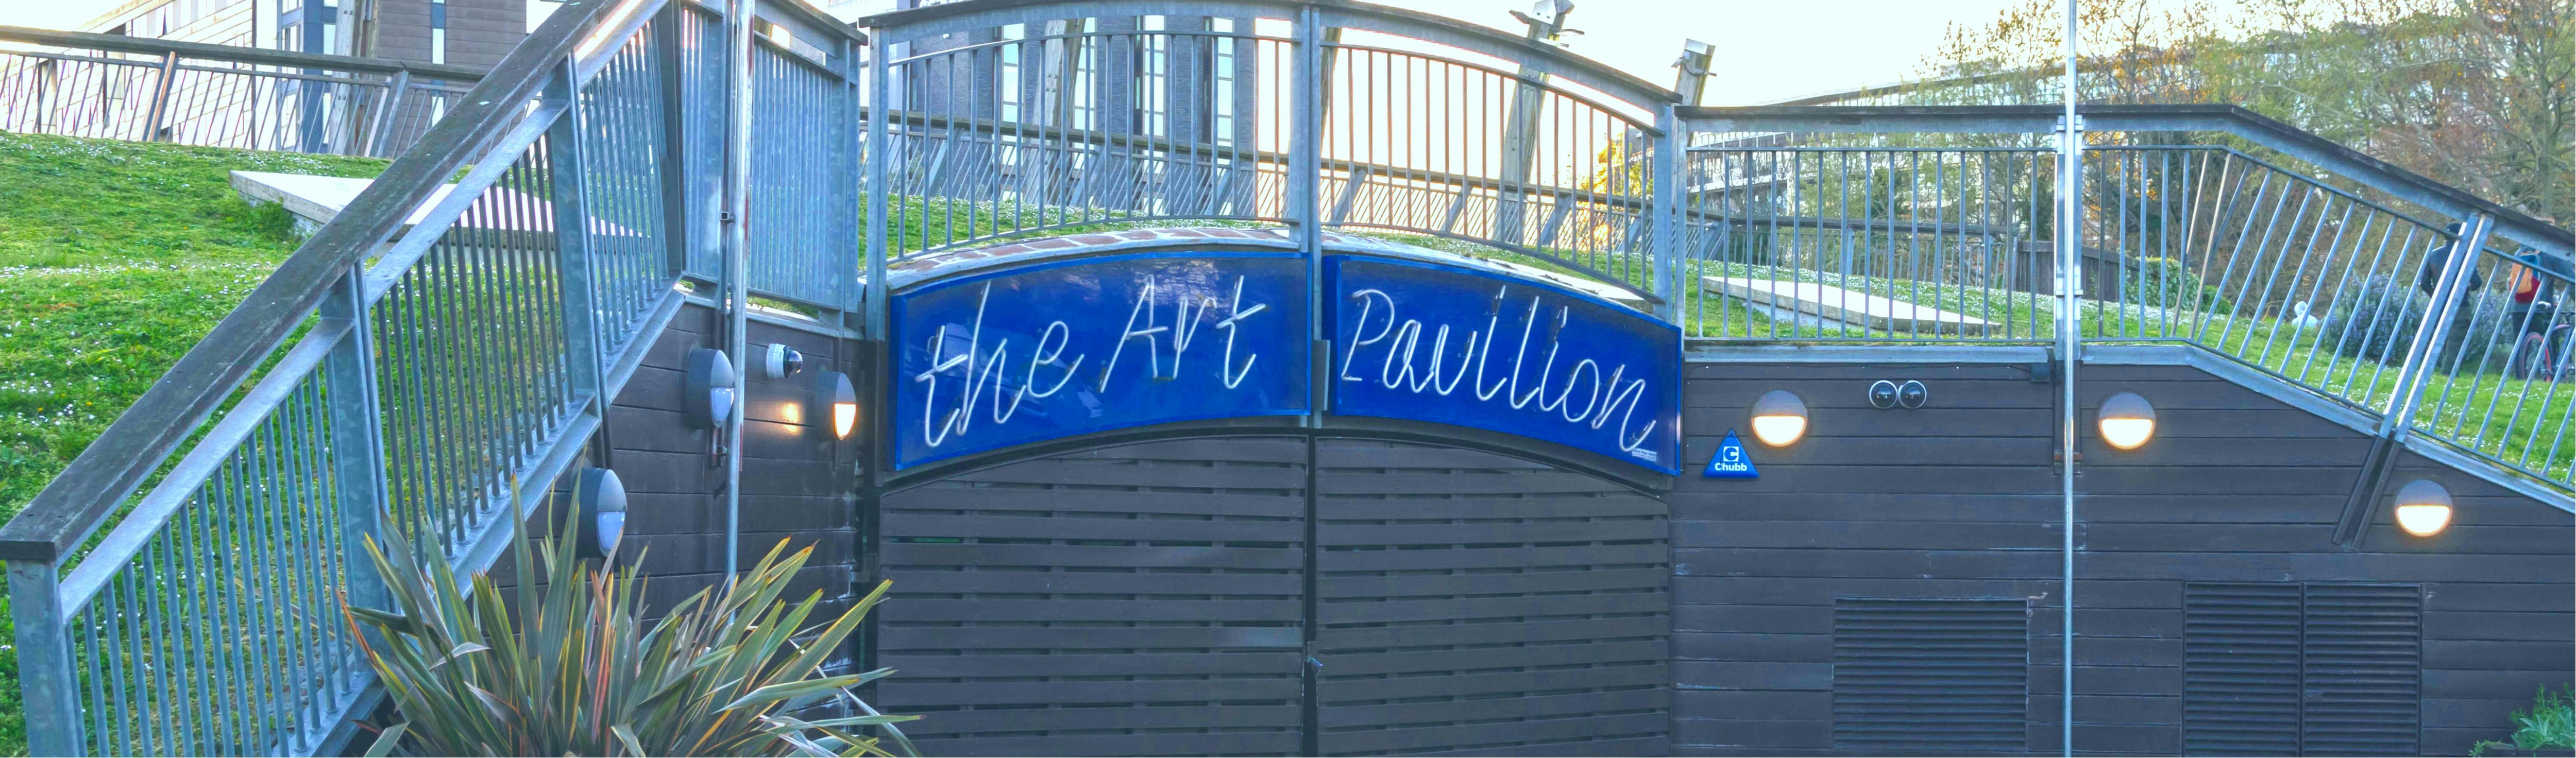 The Arts Pavilion in Mile End Park.